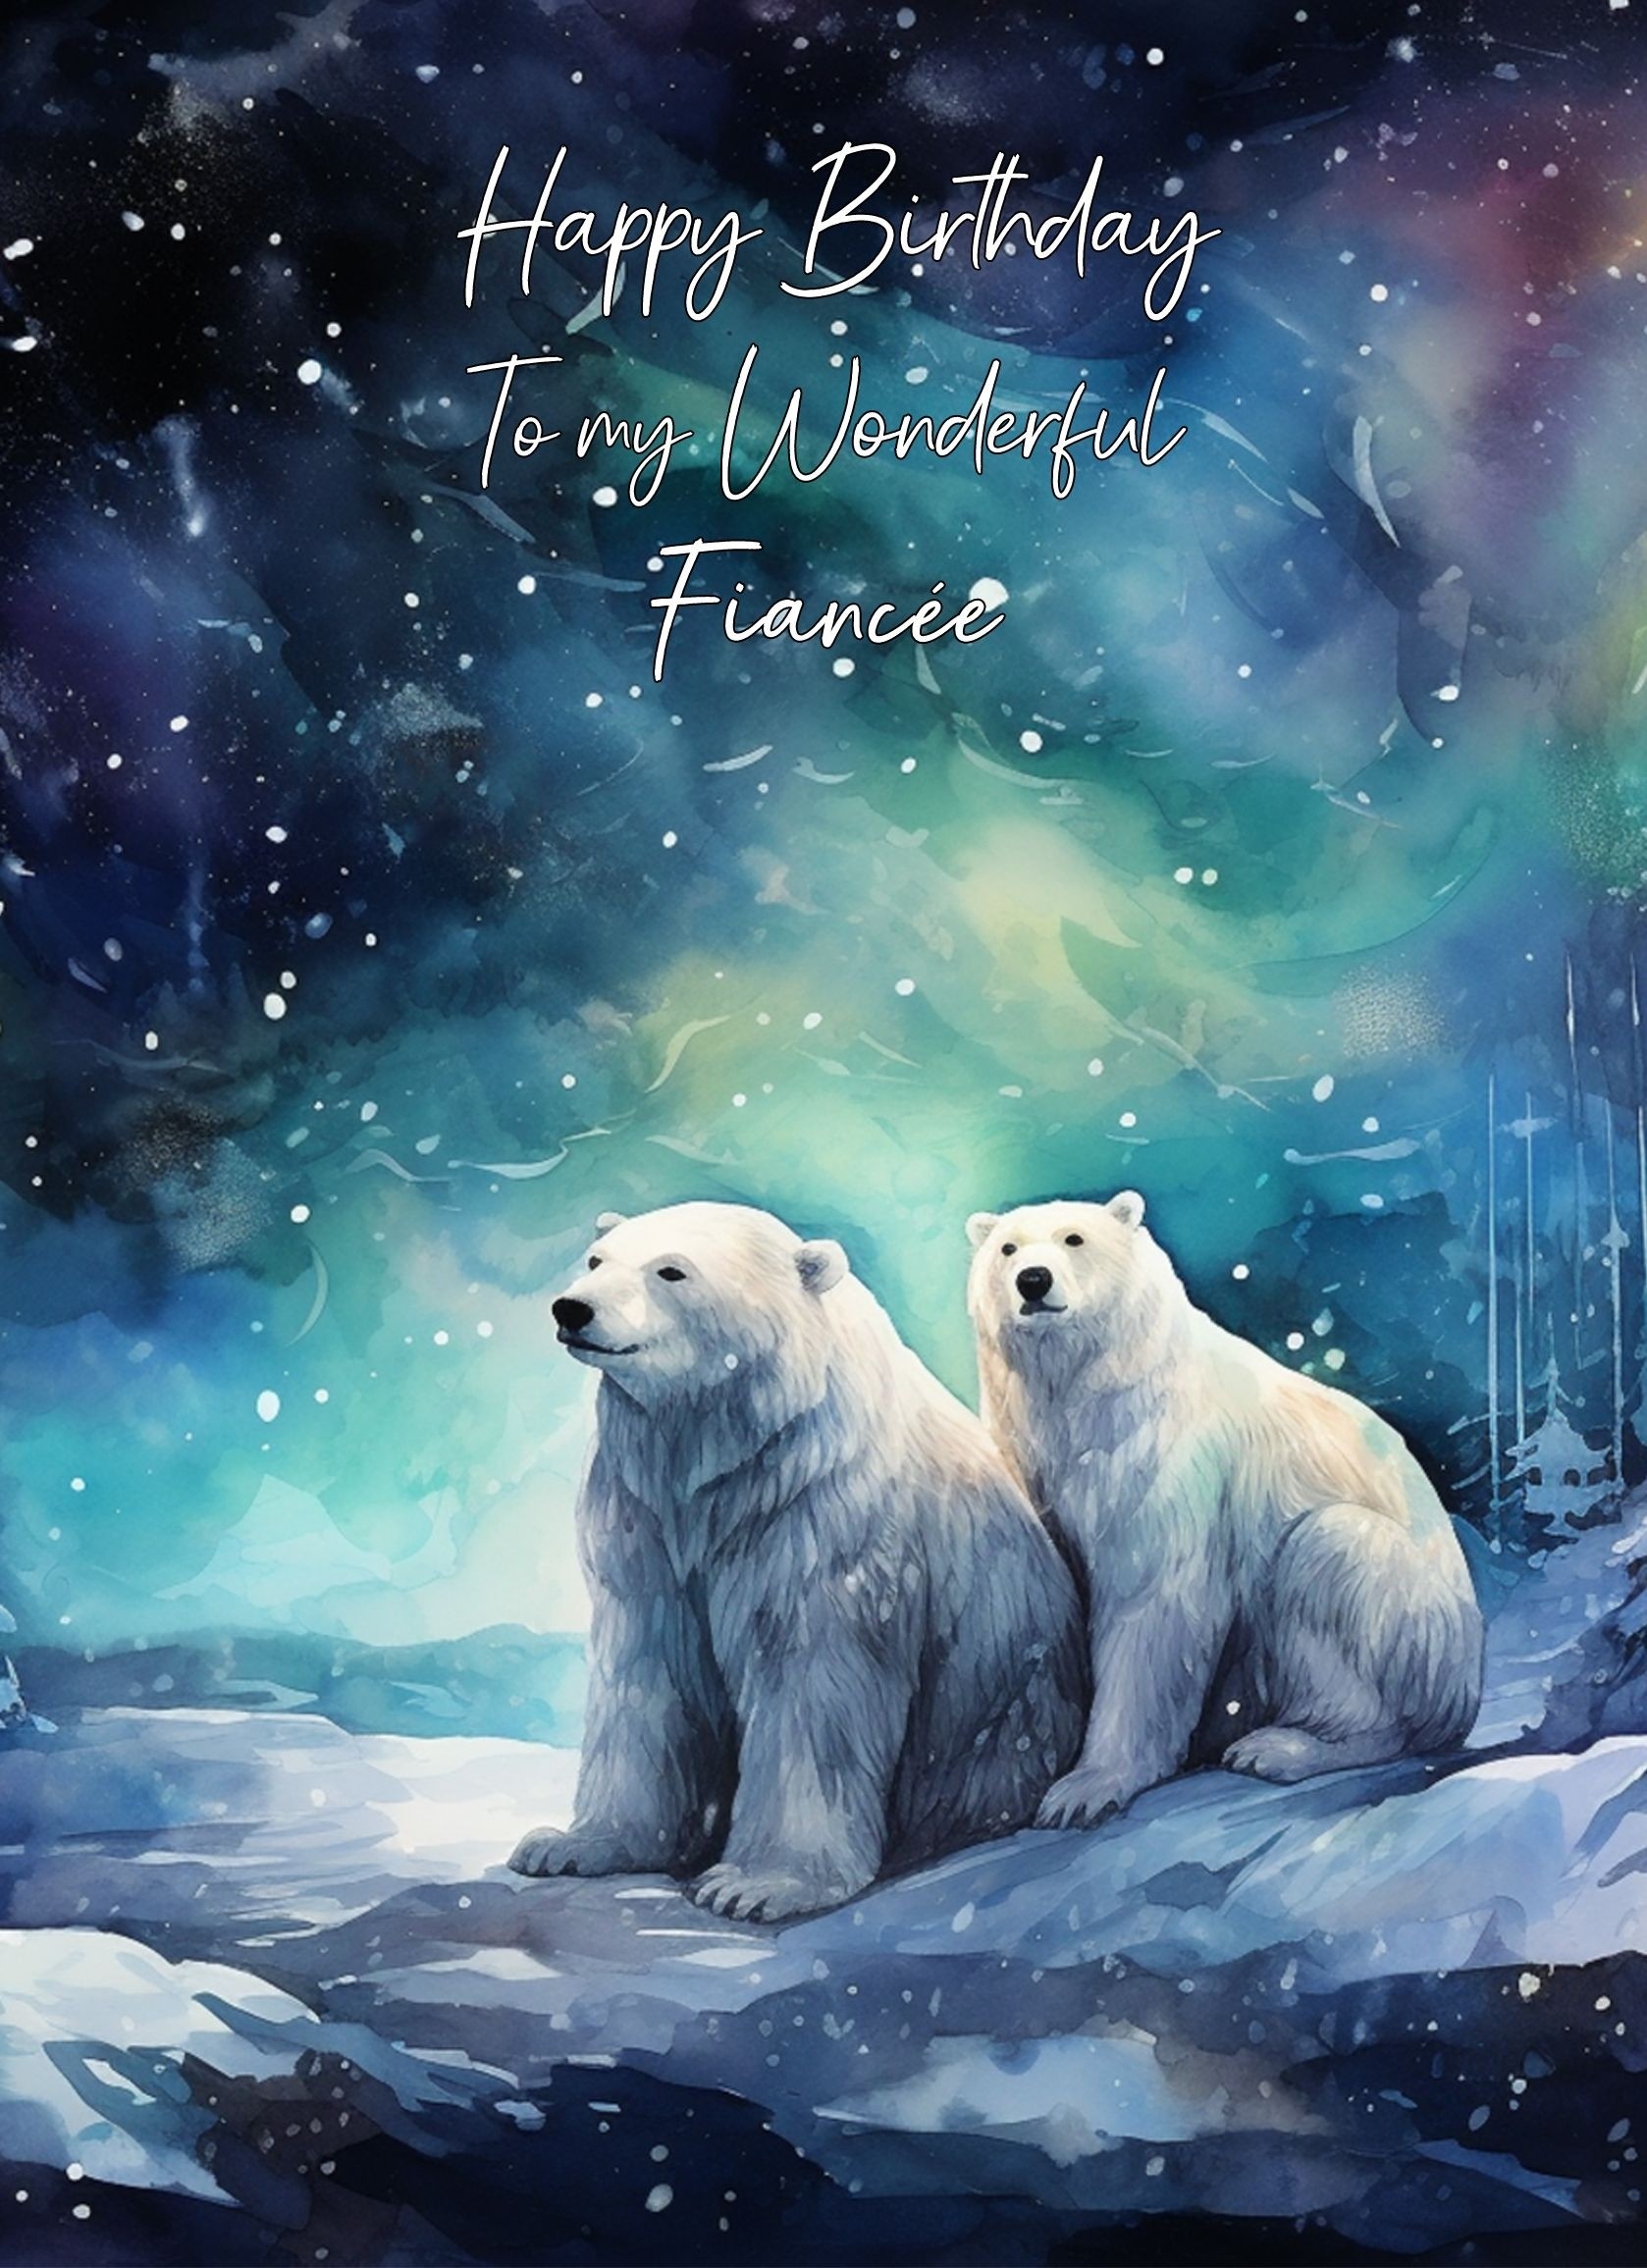 Polar Bear Art Birthday Card For Fiancee (Design 5)